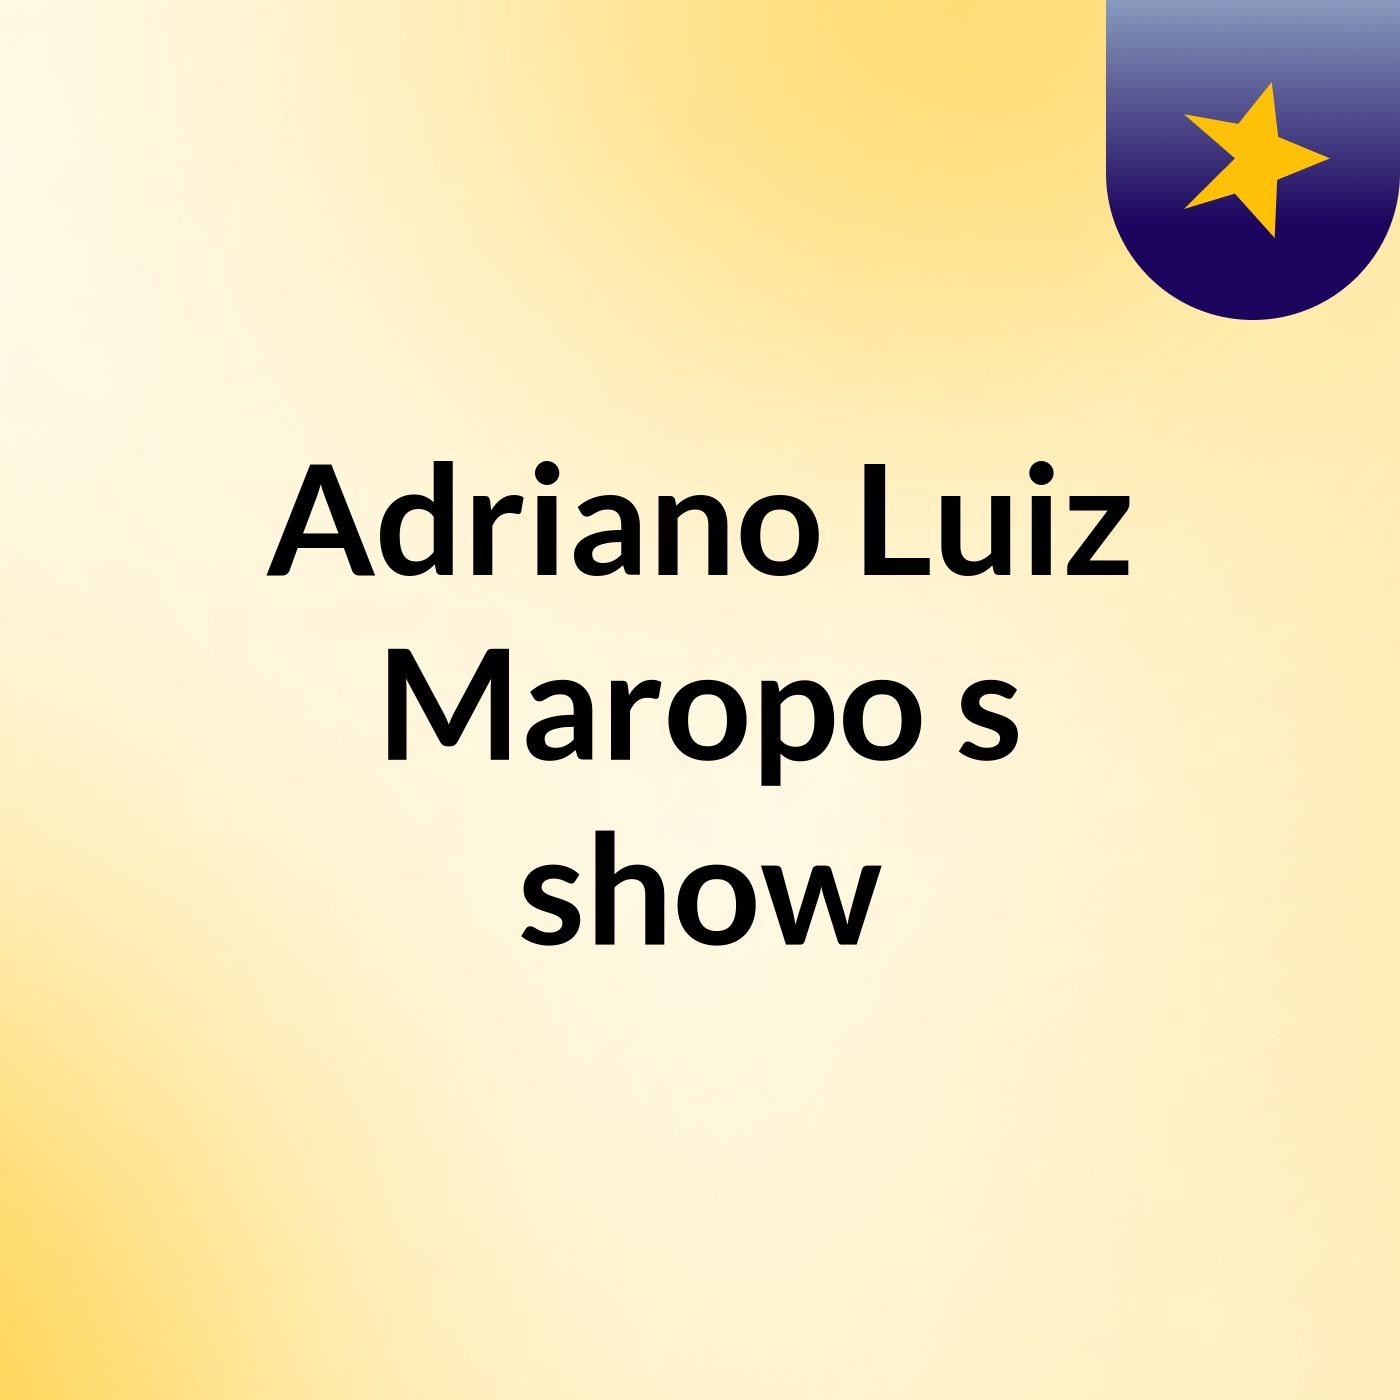 Adriano Luiz Maropo's show